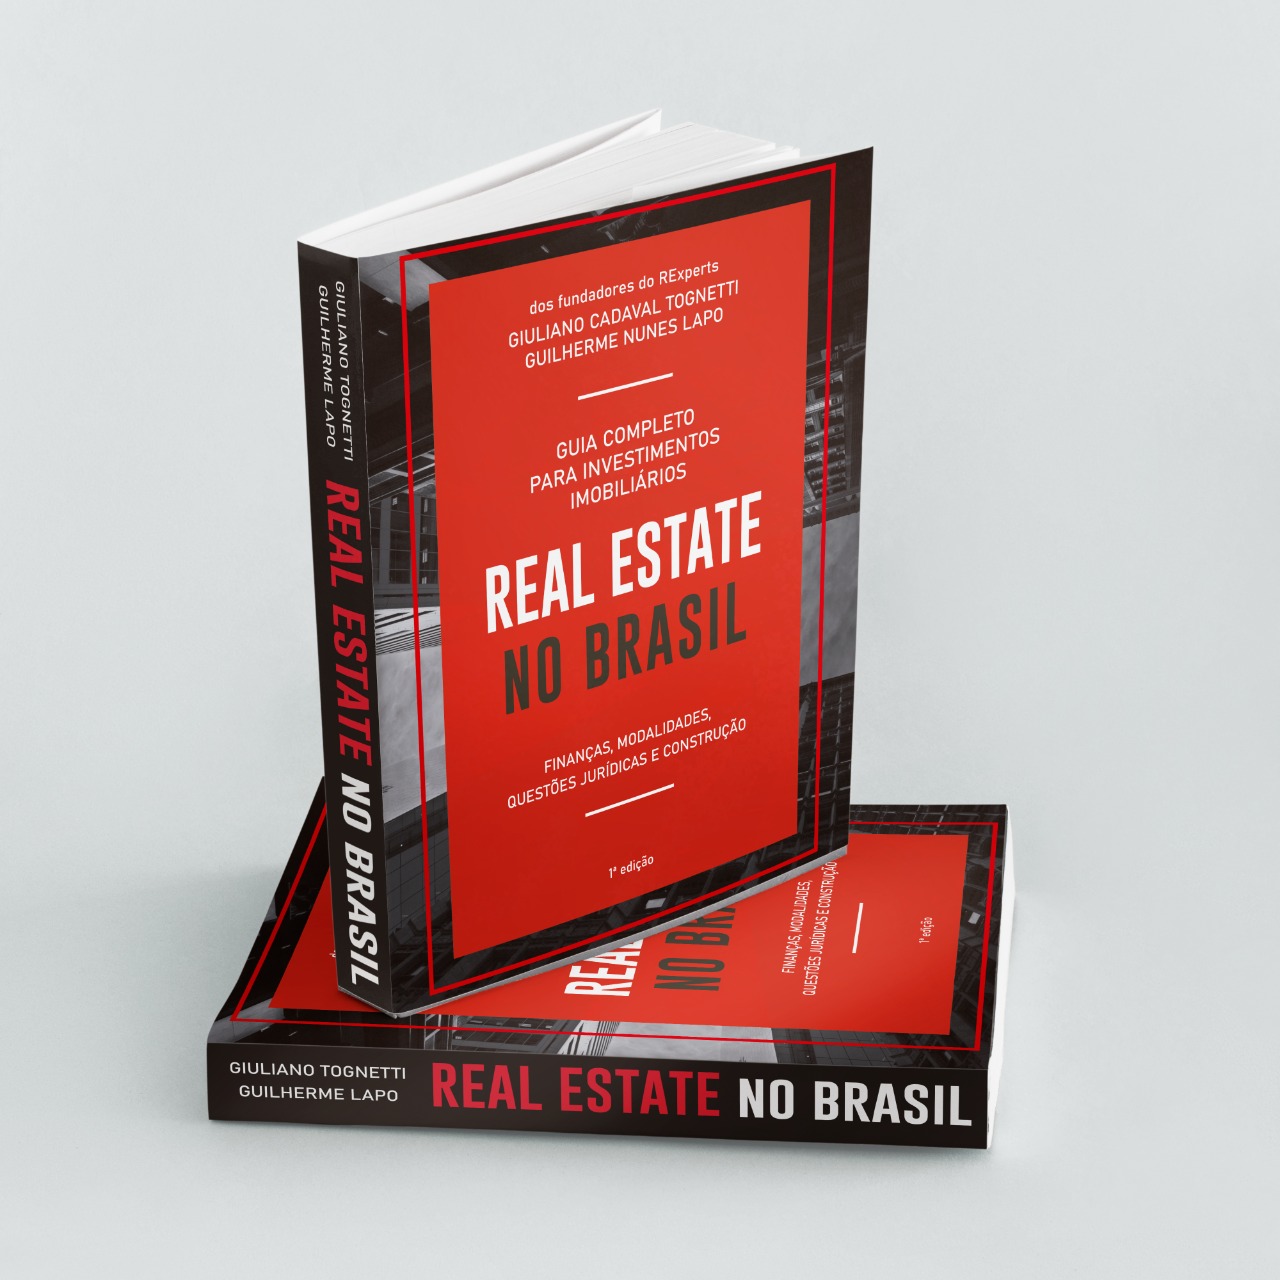 10% OFF no livro Real Estate no Brasil usando o cupom ADIT2022